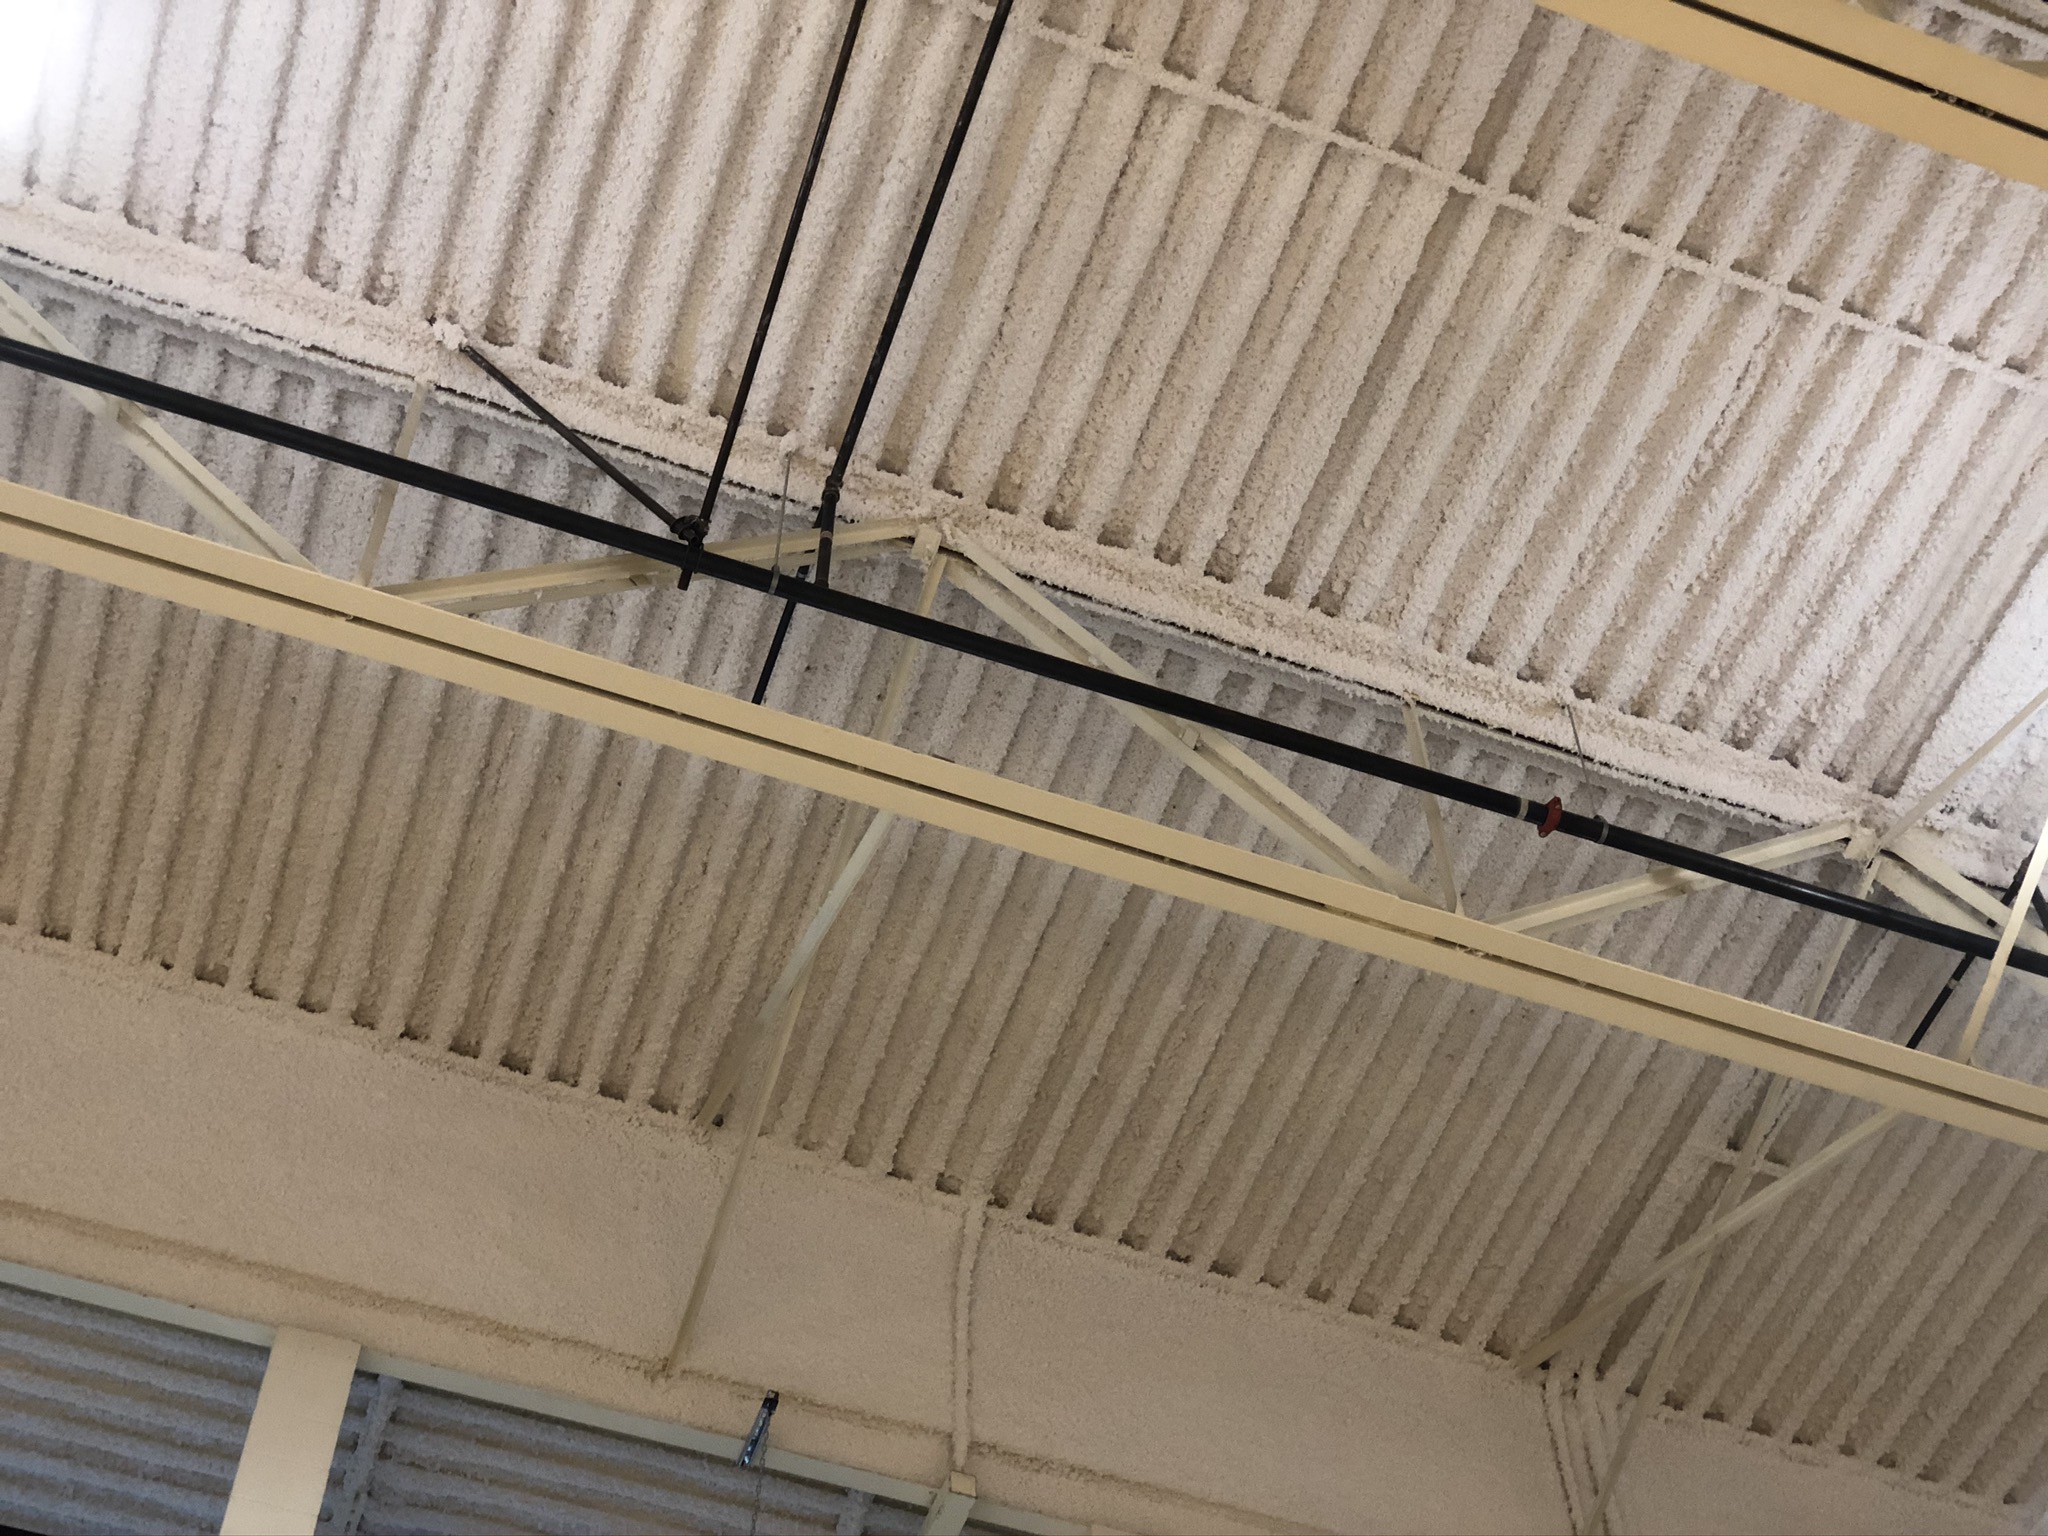 Shroyer gym ceiling after K-13 application